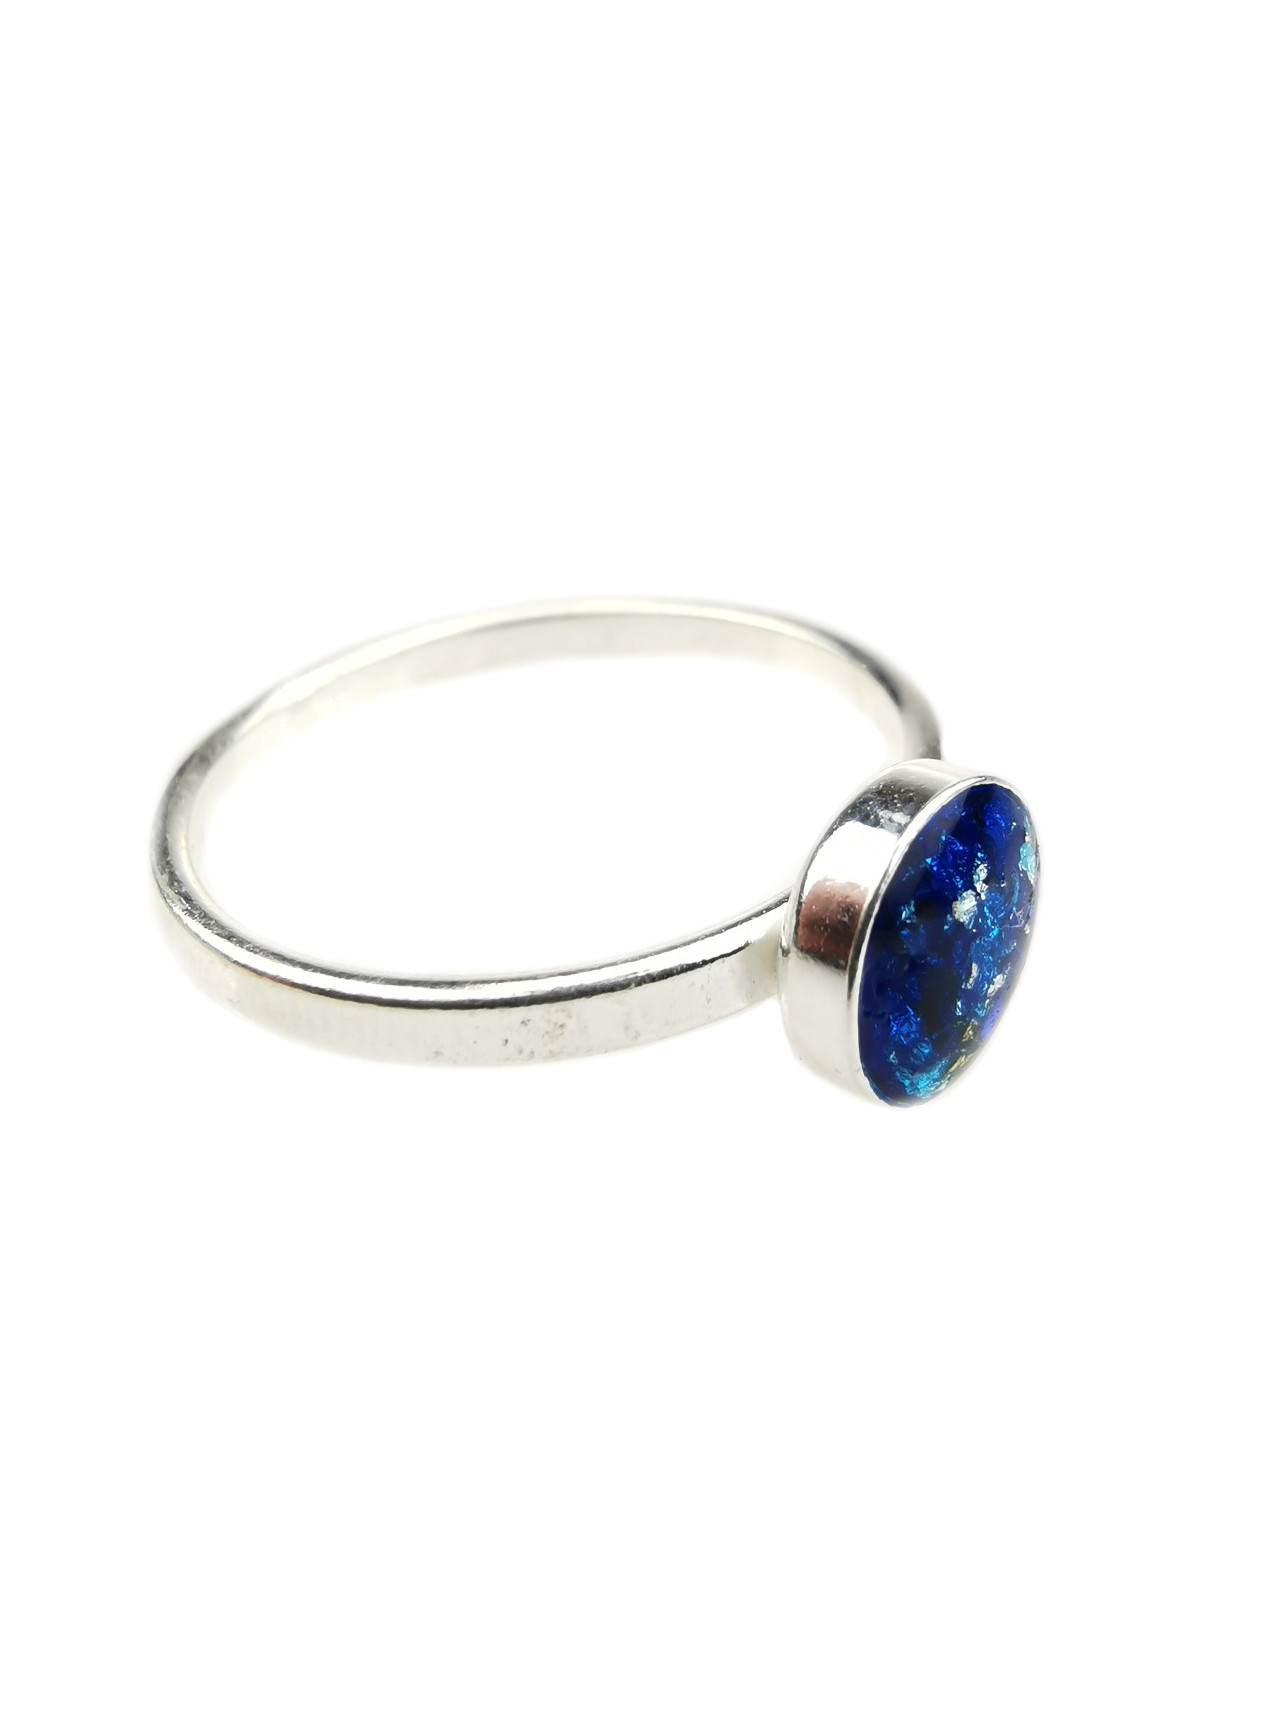 Medium Blue Orgone Crystal Ring by OrgoneVibes